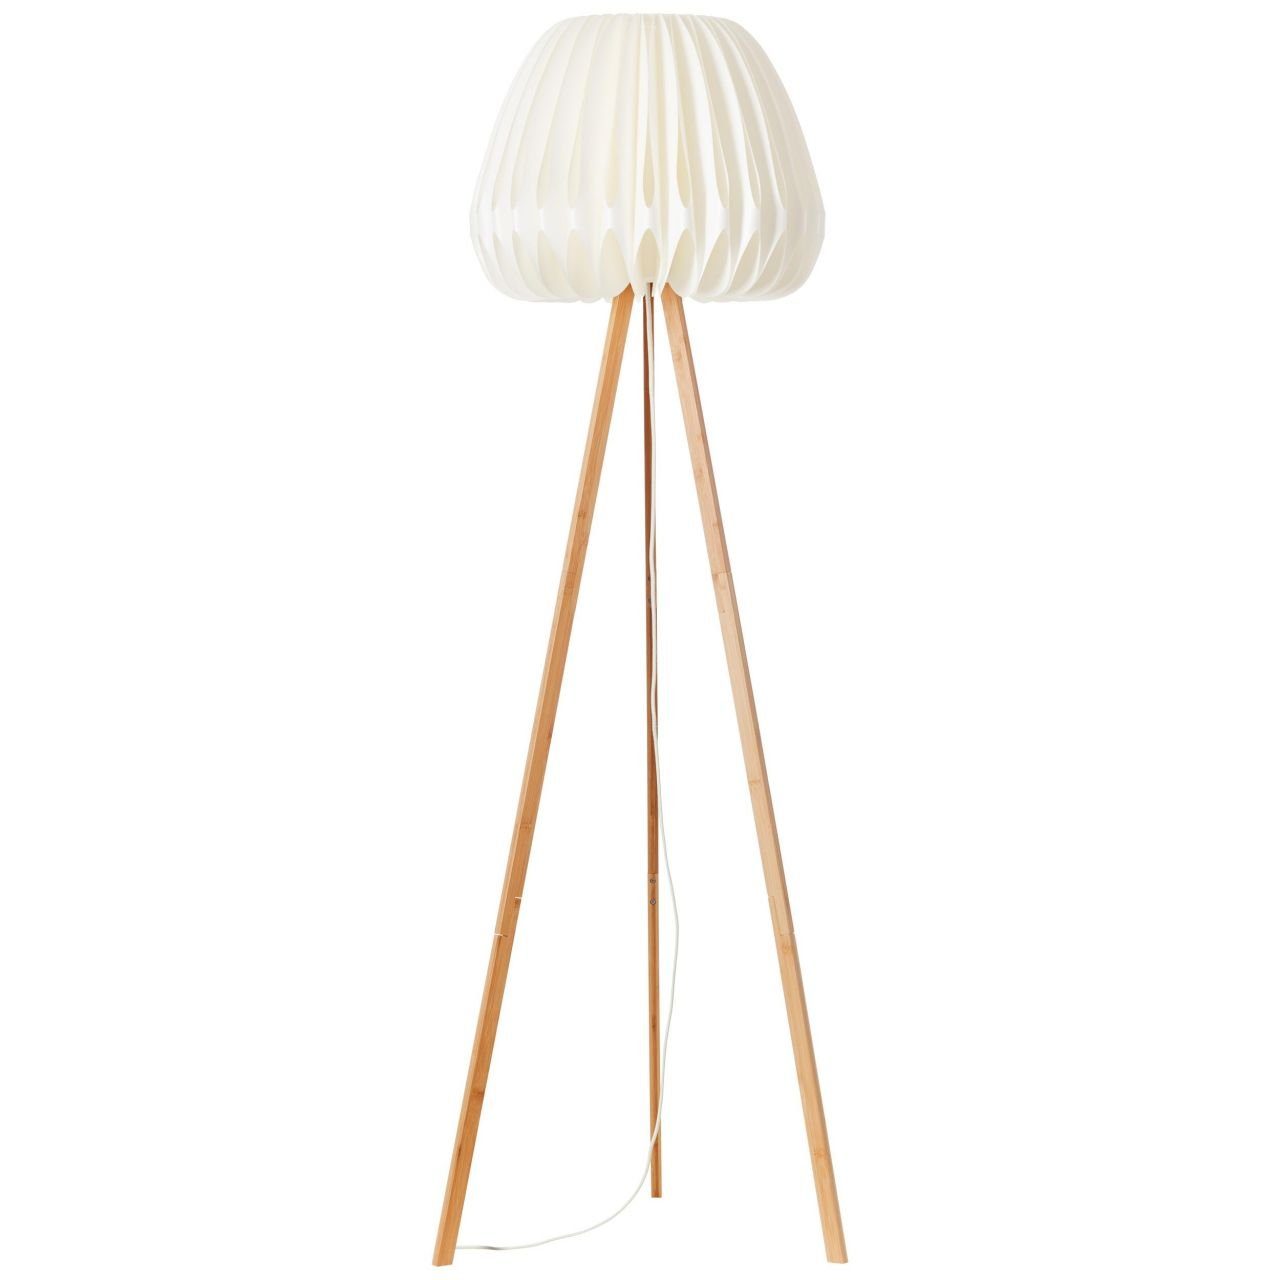 Bambus/Kunststoff holz Lampe, Stehlampe hell/weiß, Standleuchte, dreibeinig Inna, Inna Brilliant